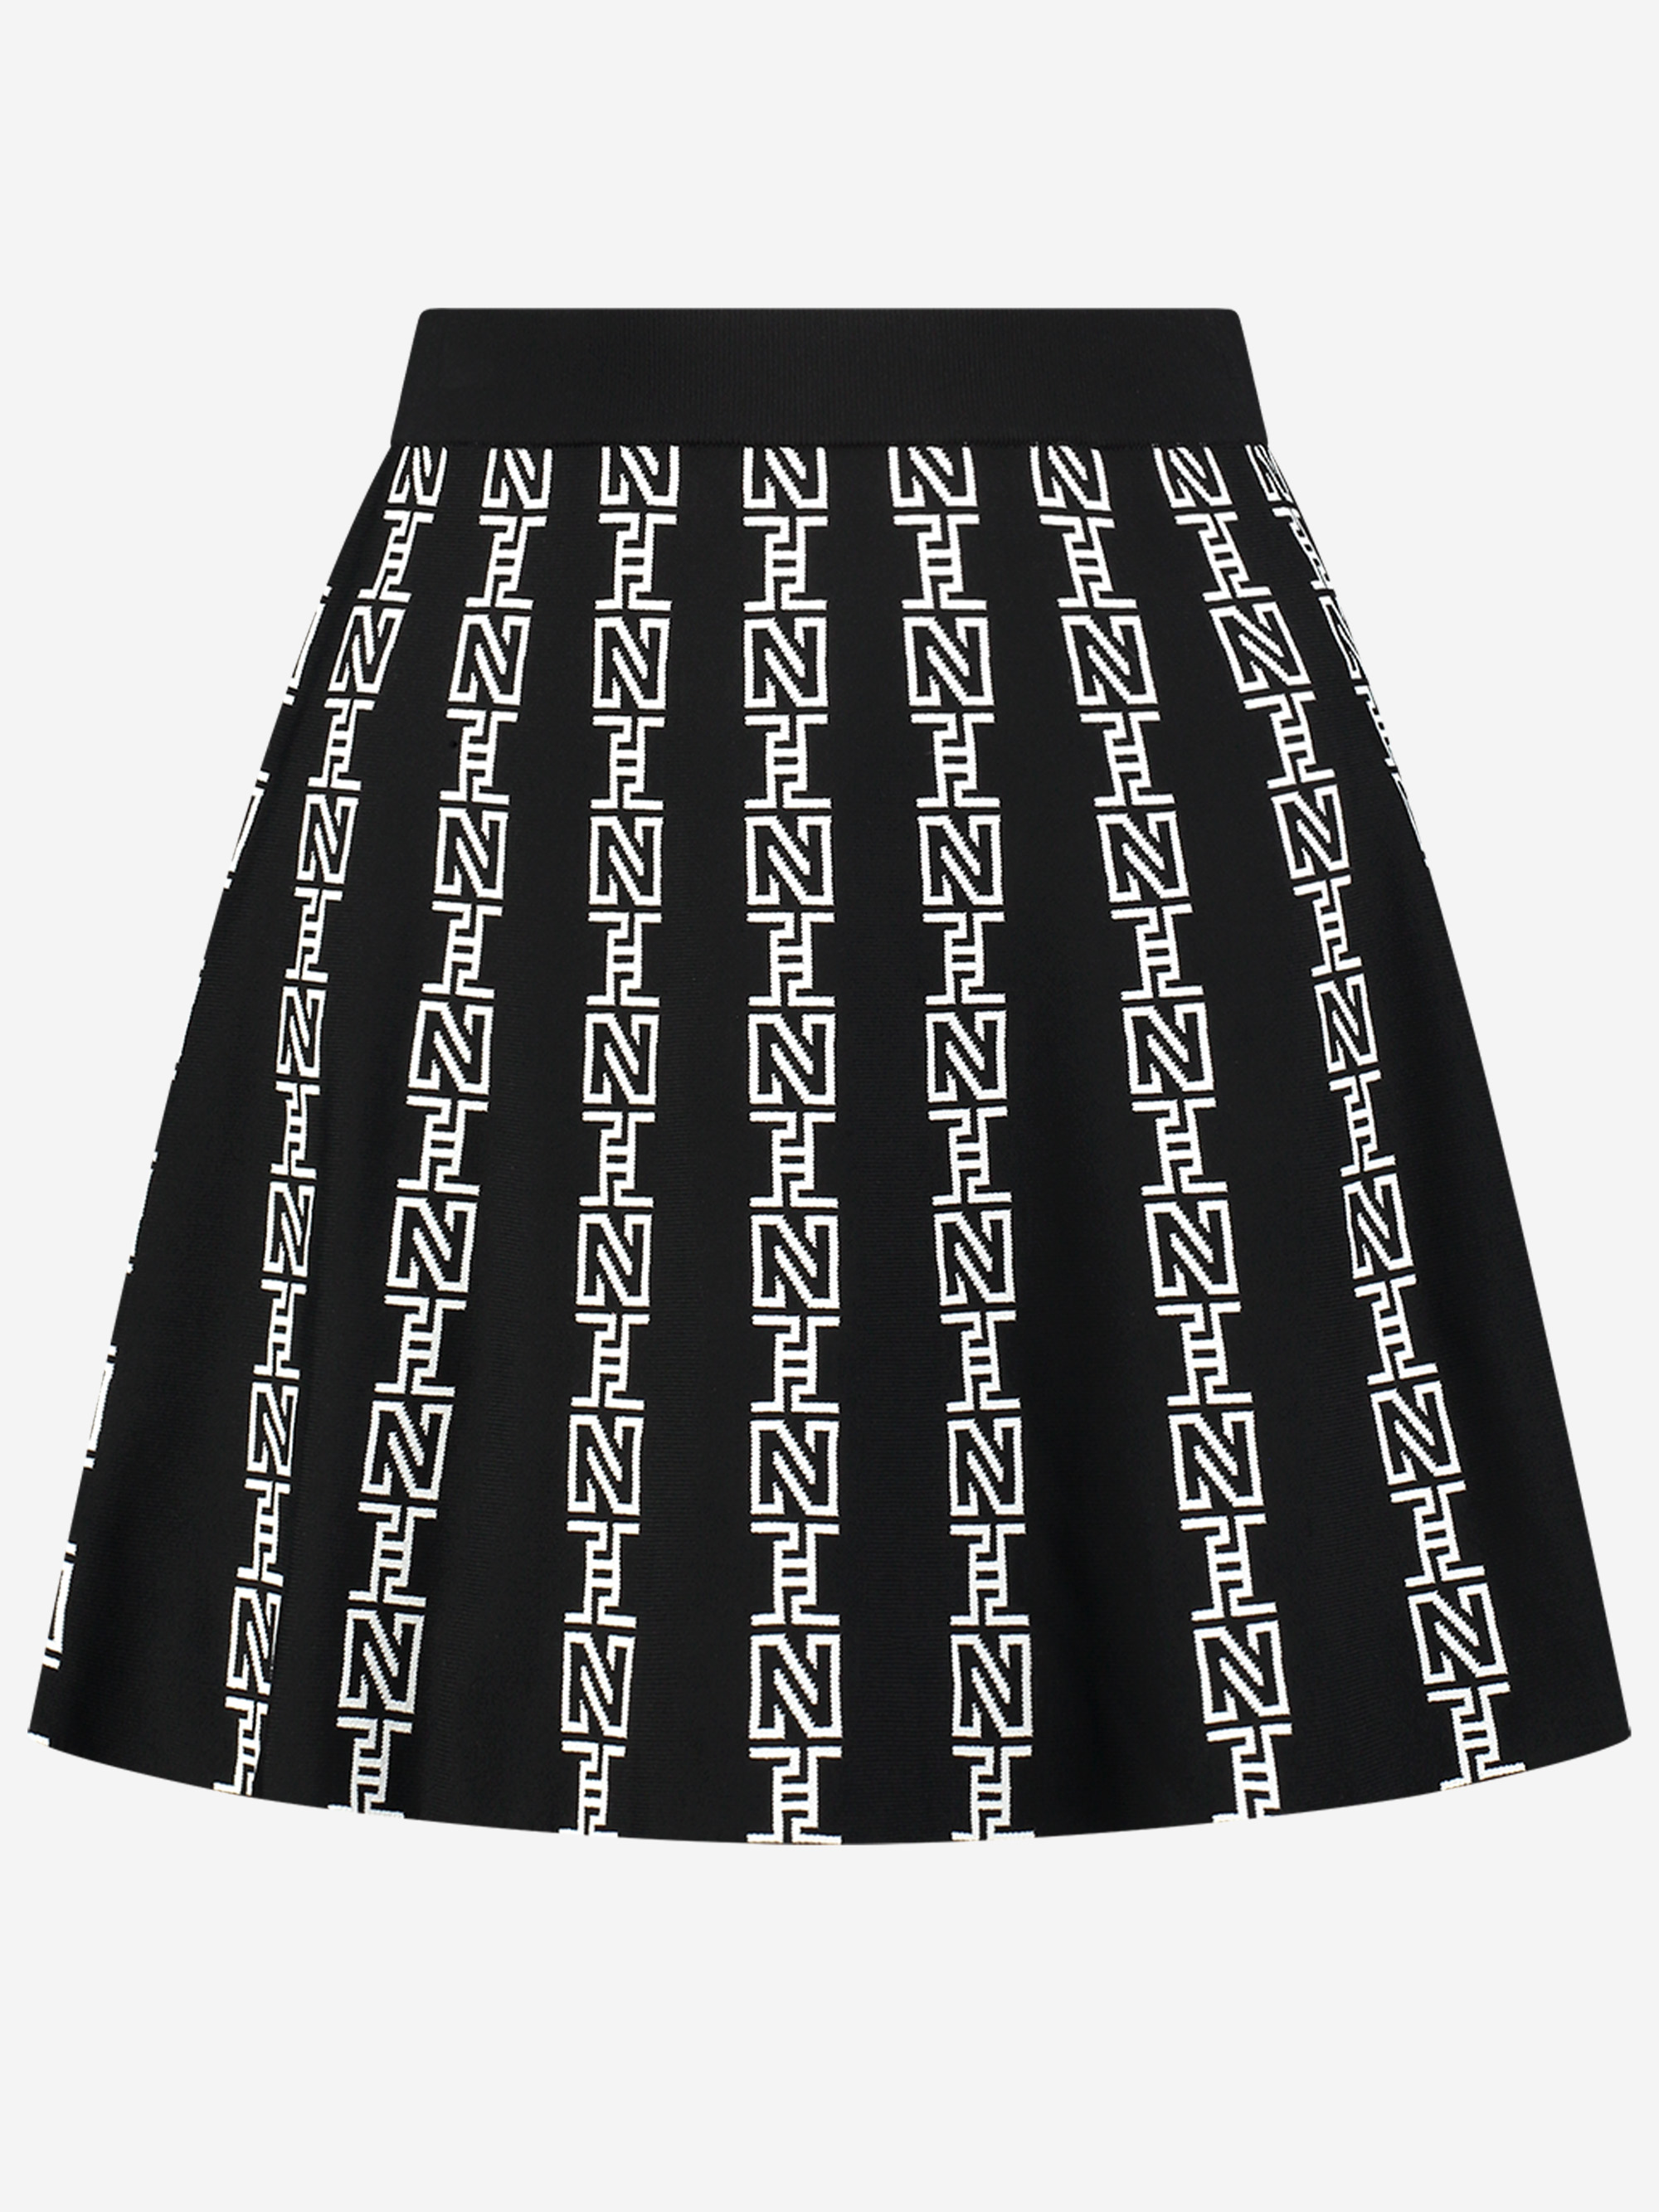 Avon Skirt